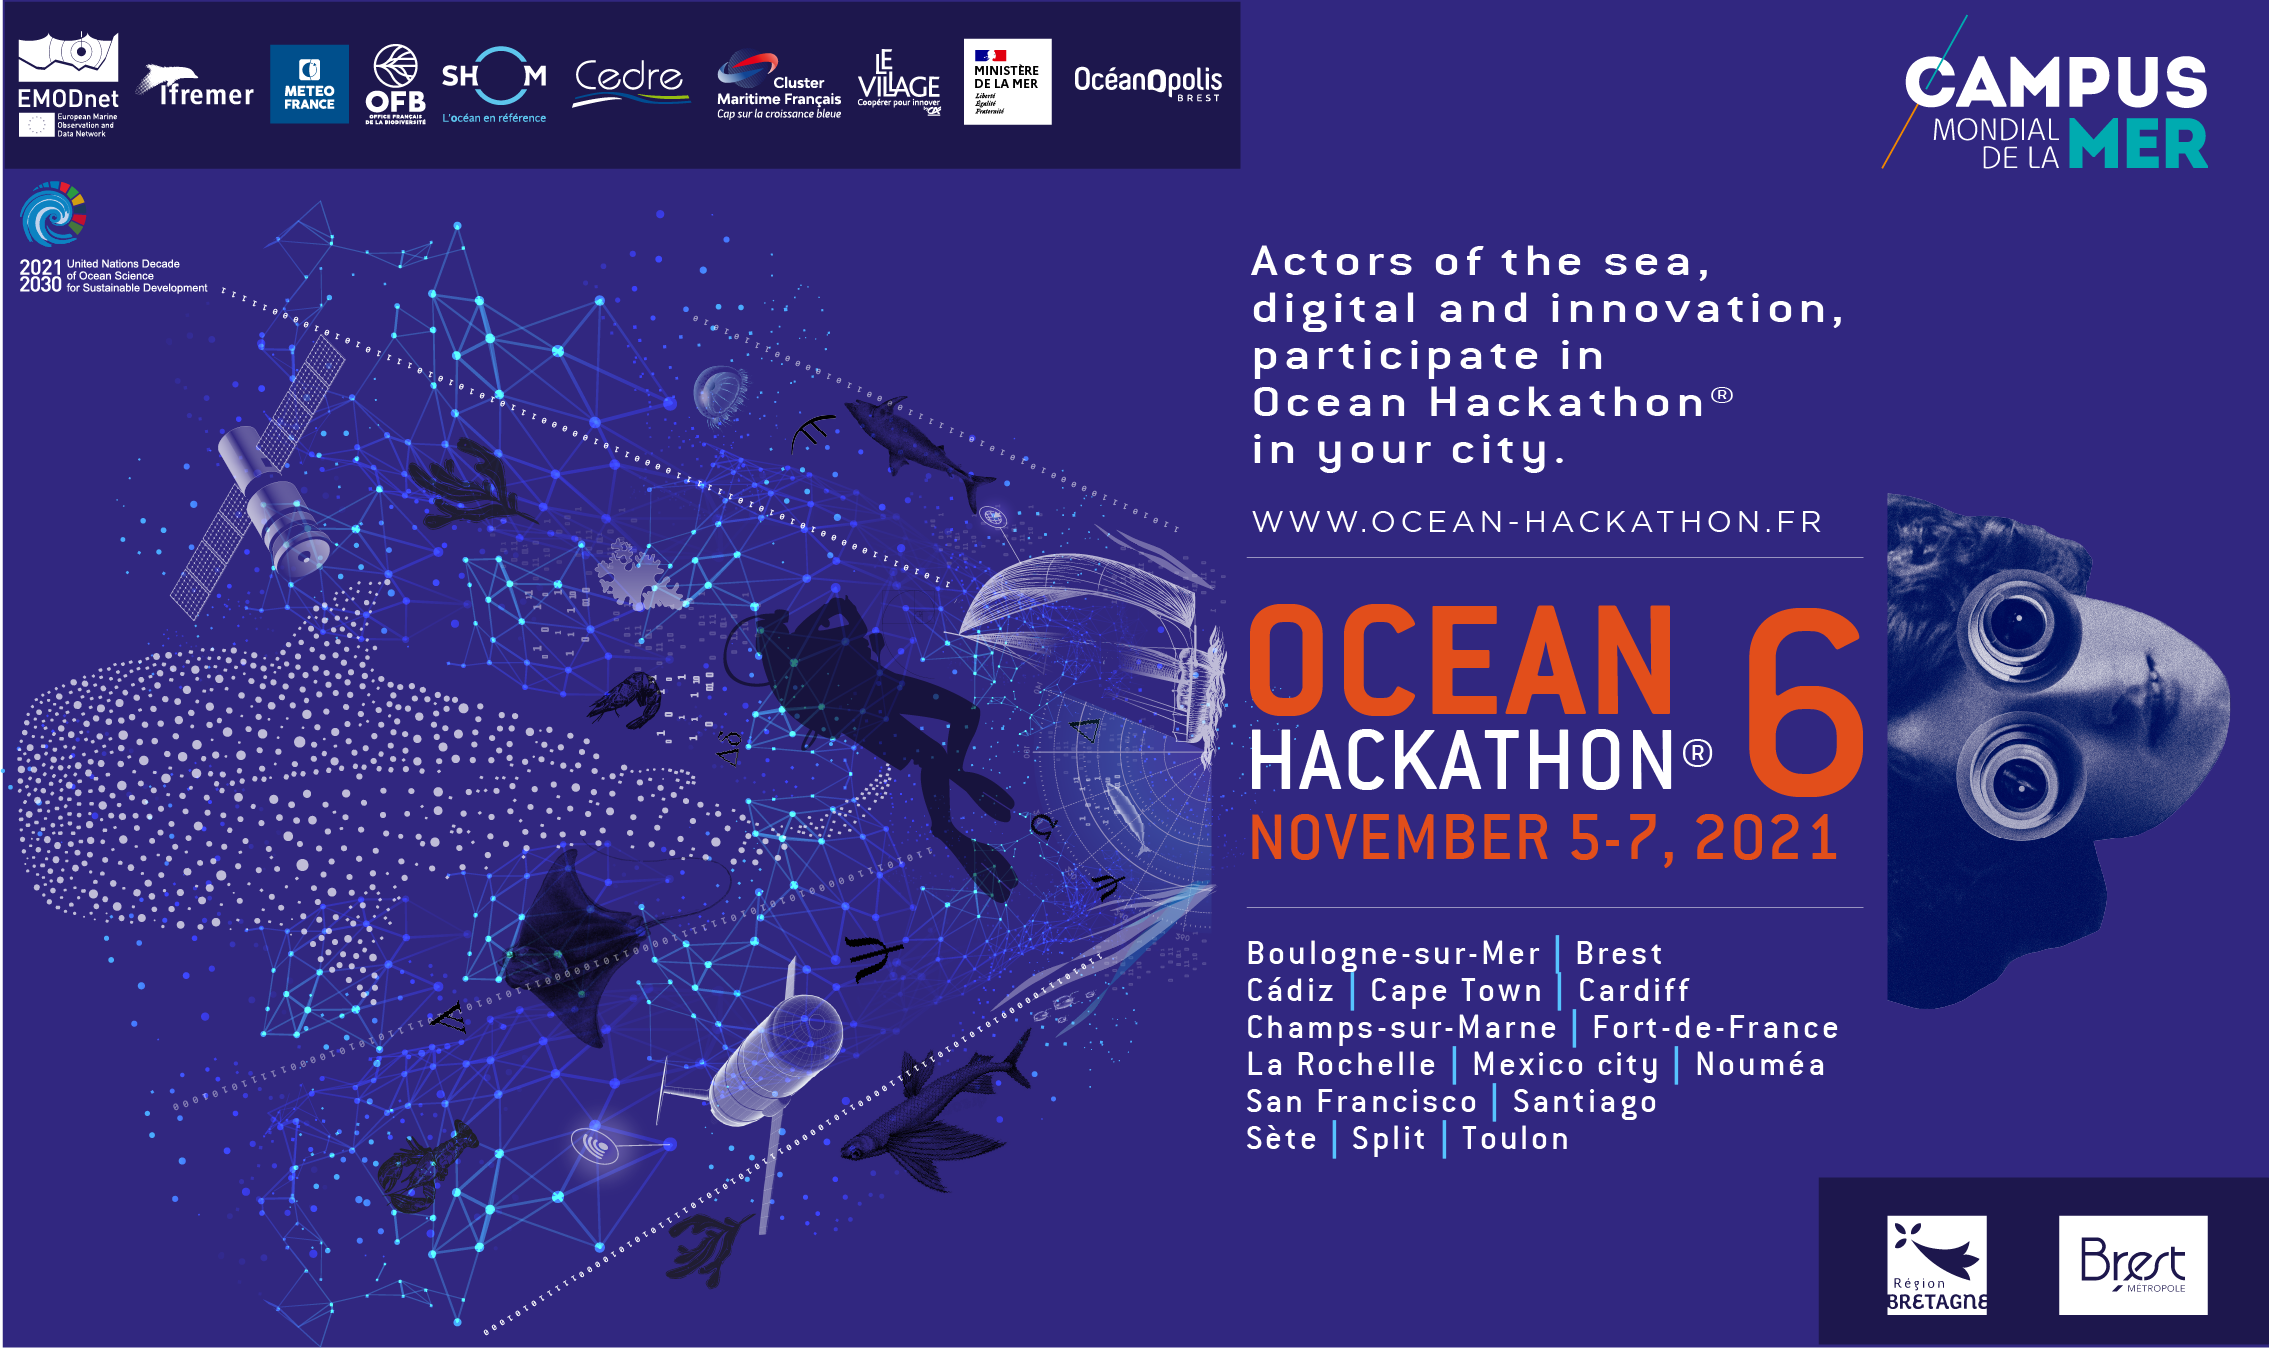 Grande Finale Ocean Hackathon® 2021